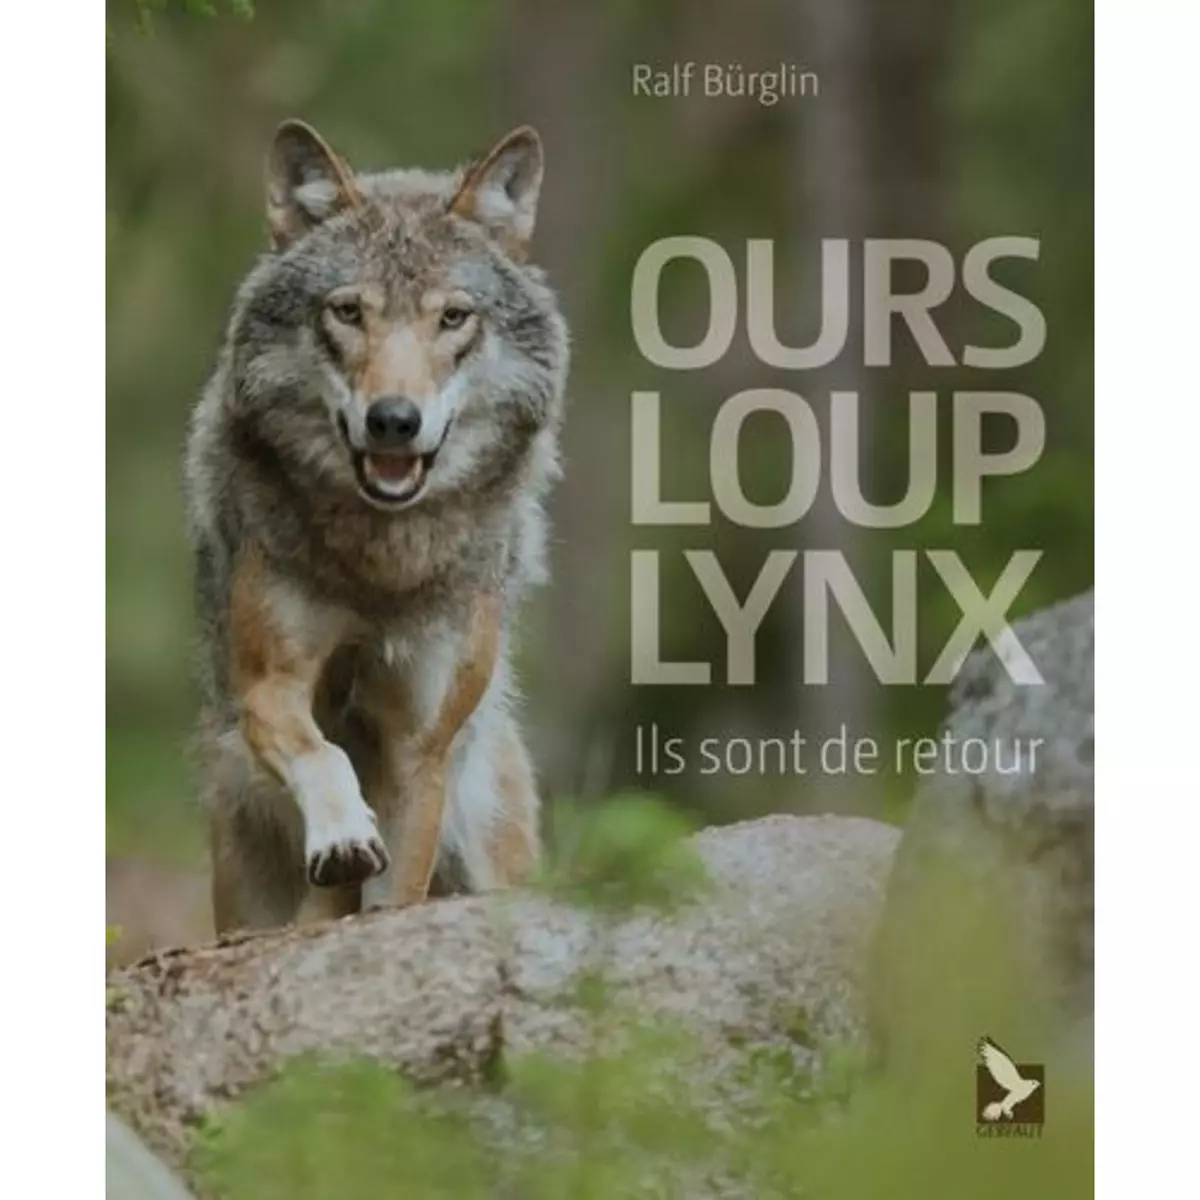  OURS, LOUP, LYNX. ILS SONT DE RETOUR, Burglin Ralf